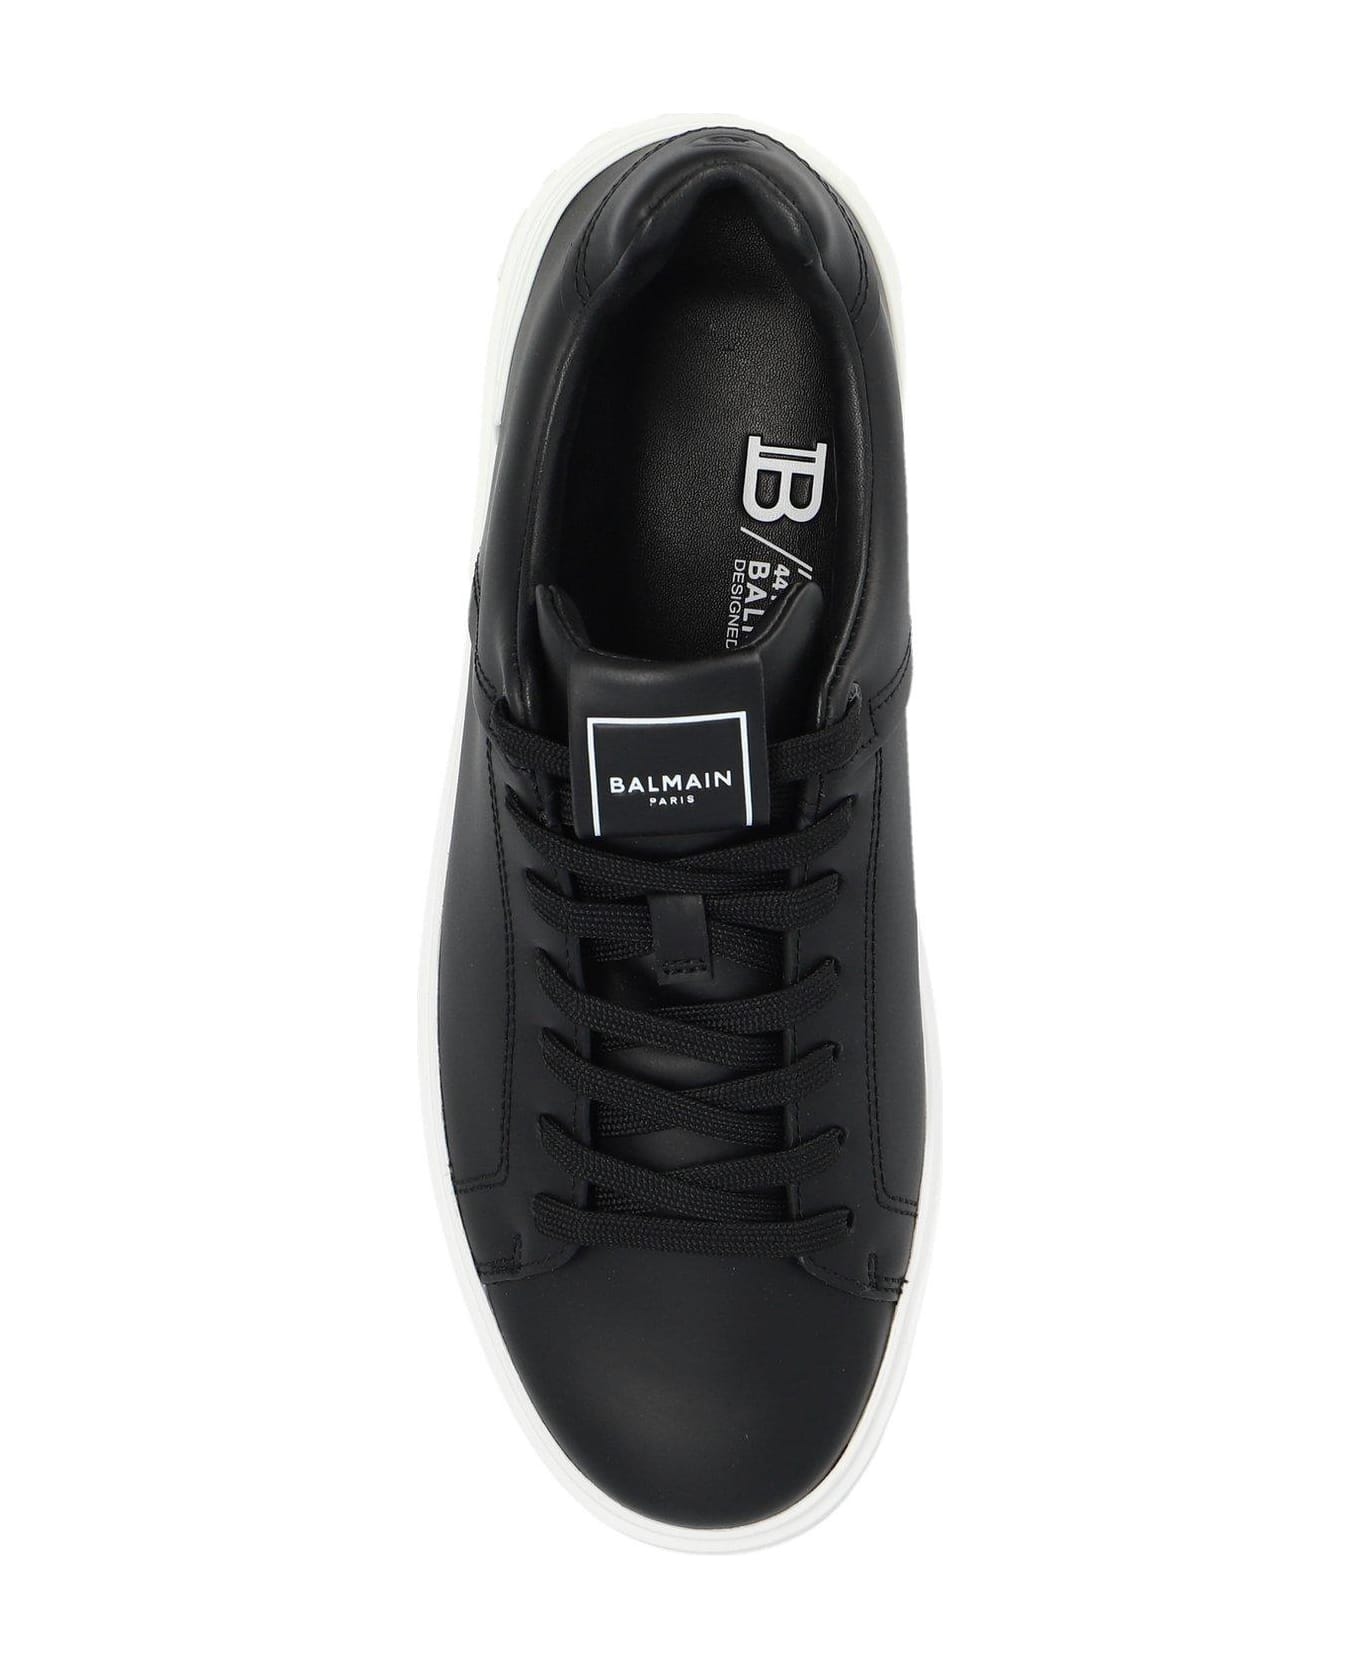 Balmain B Court Low-top Sneakers - Black スニーカー